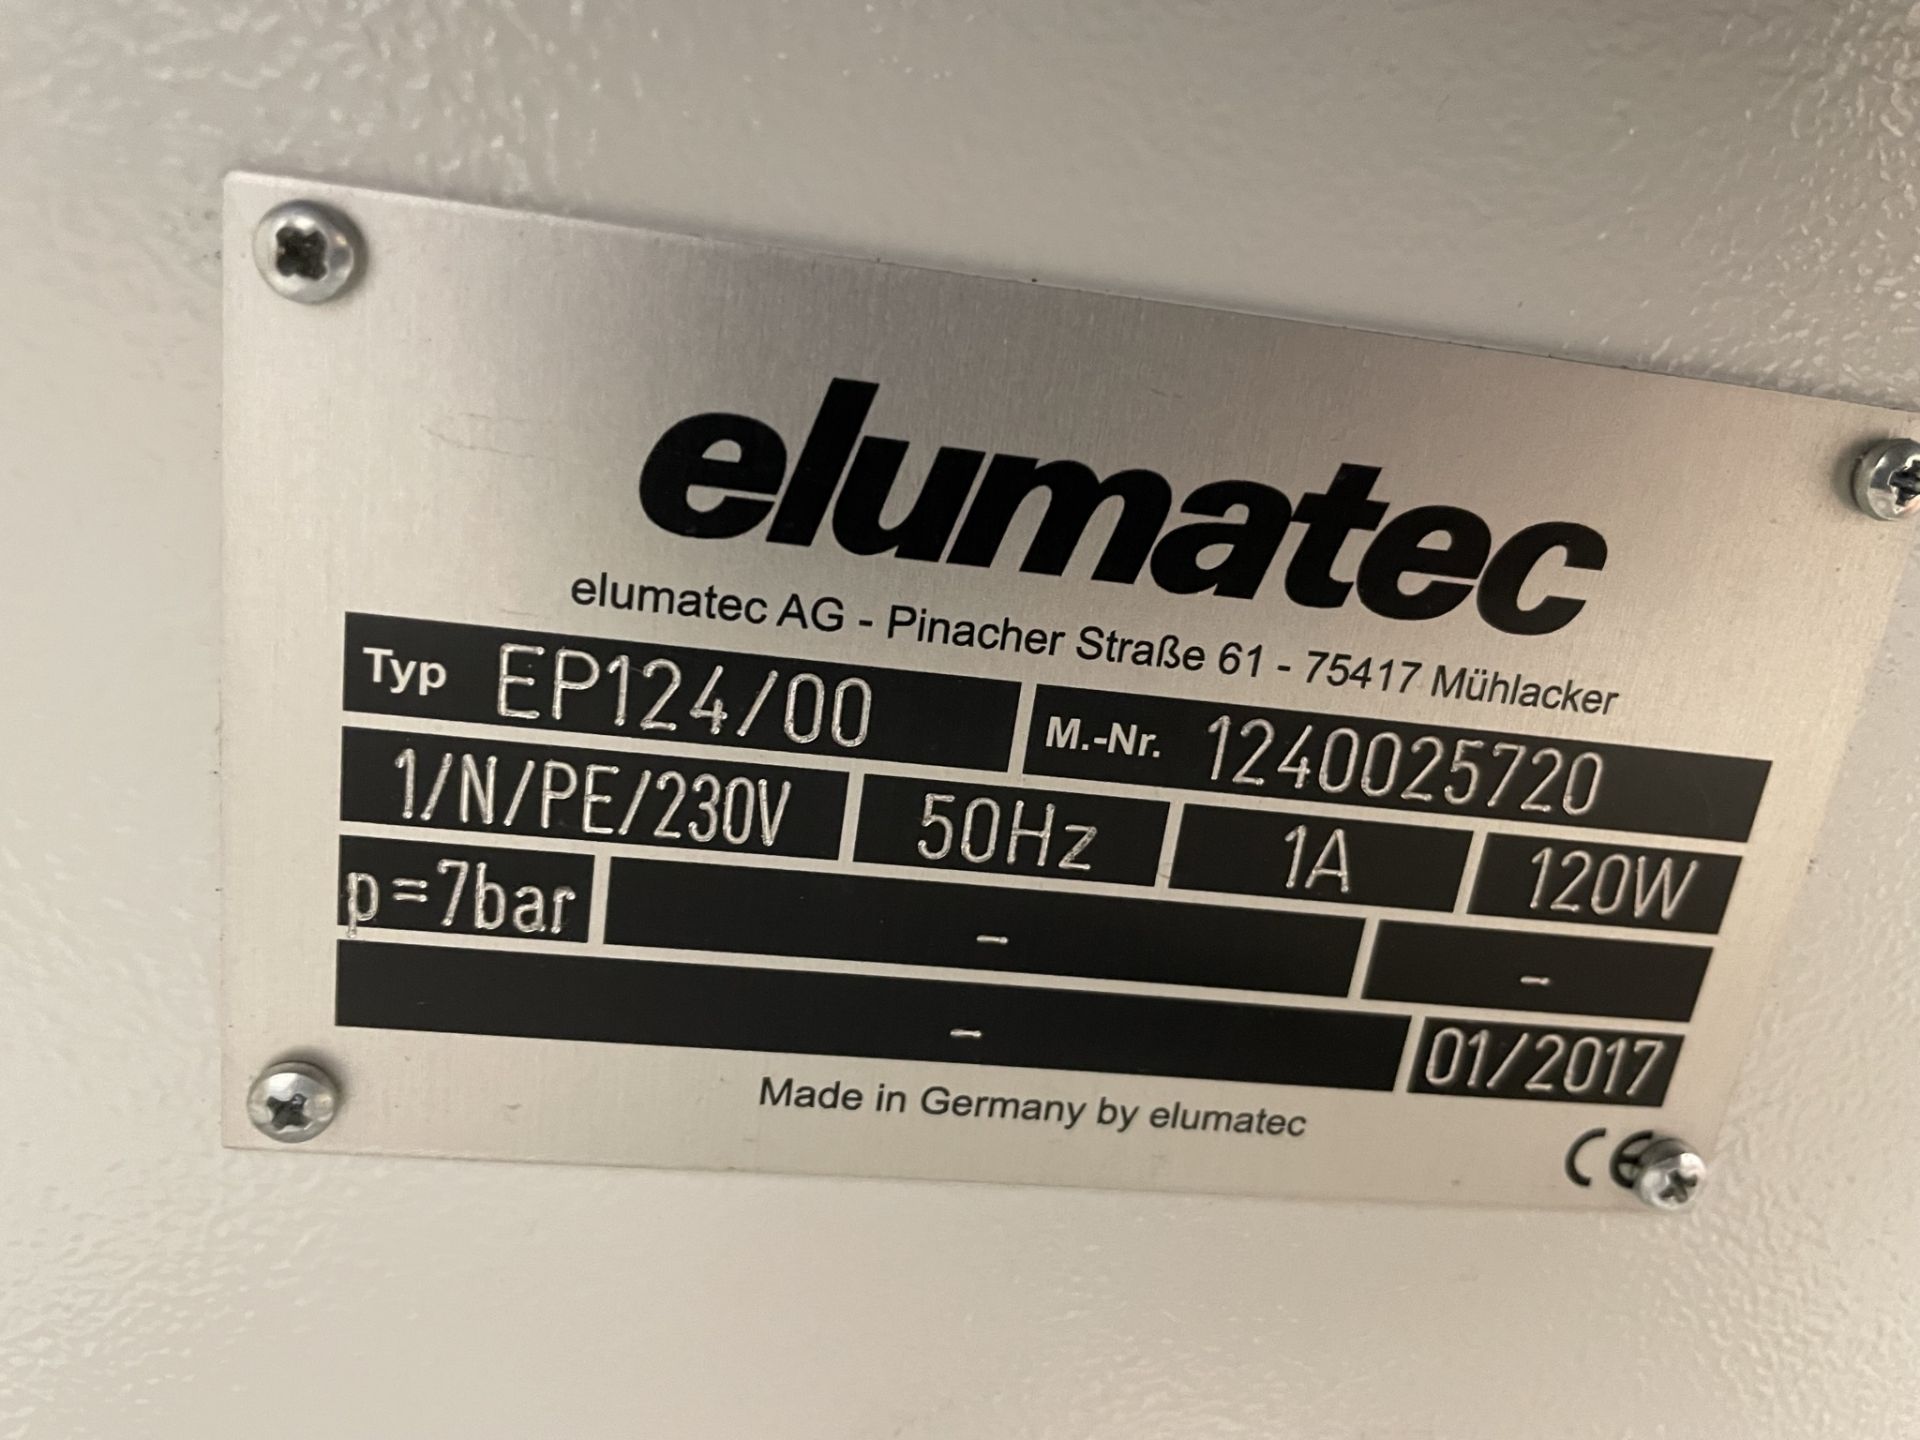 Elumatec, EP124/00 corner crimping machine, Serial No. 1240025720 (DOM: 2017), 40 pairs crimping - Bild 4 aus 5